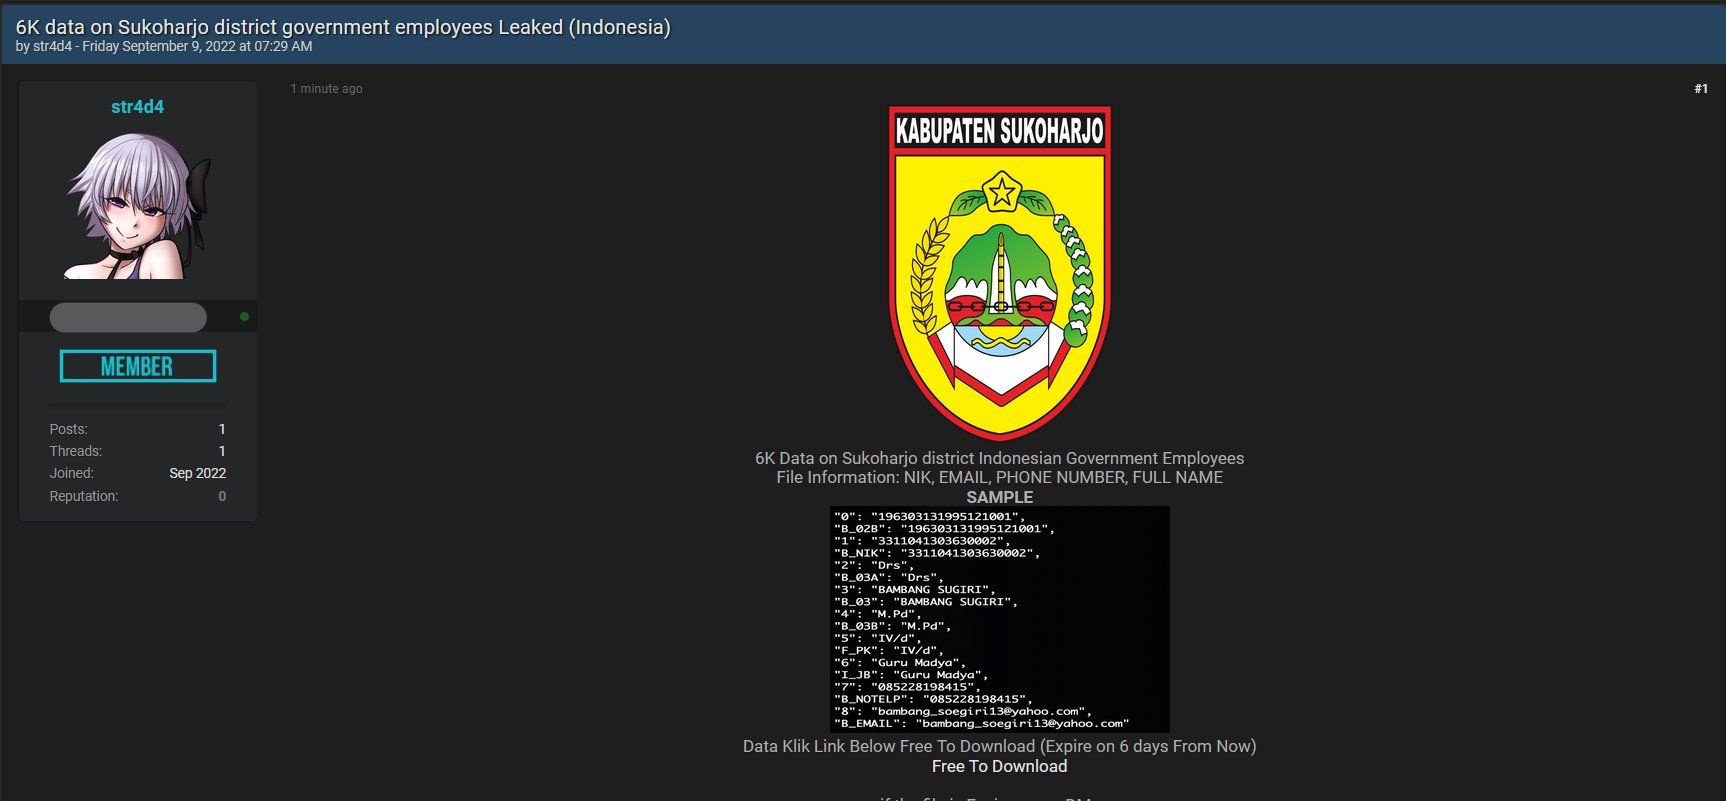 Susul Aksi Bjorka, Hacker str4d4 Ikut Bocorkan Data Pegawai Pemerintah Kabupaten Sukoharjo